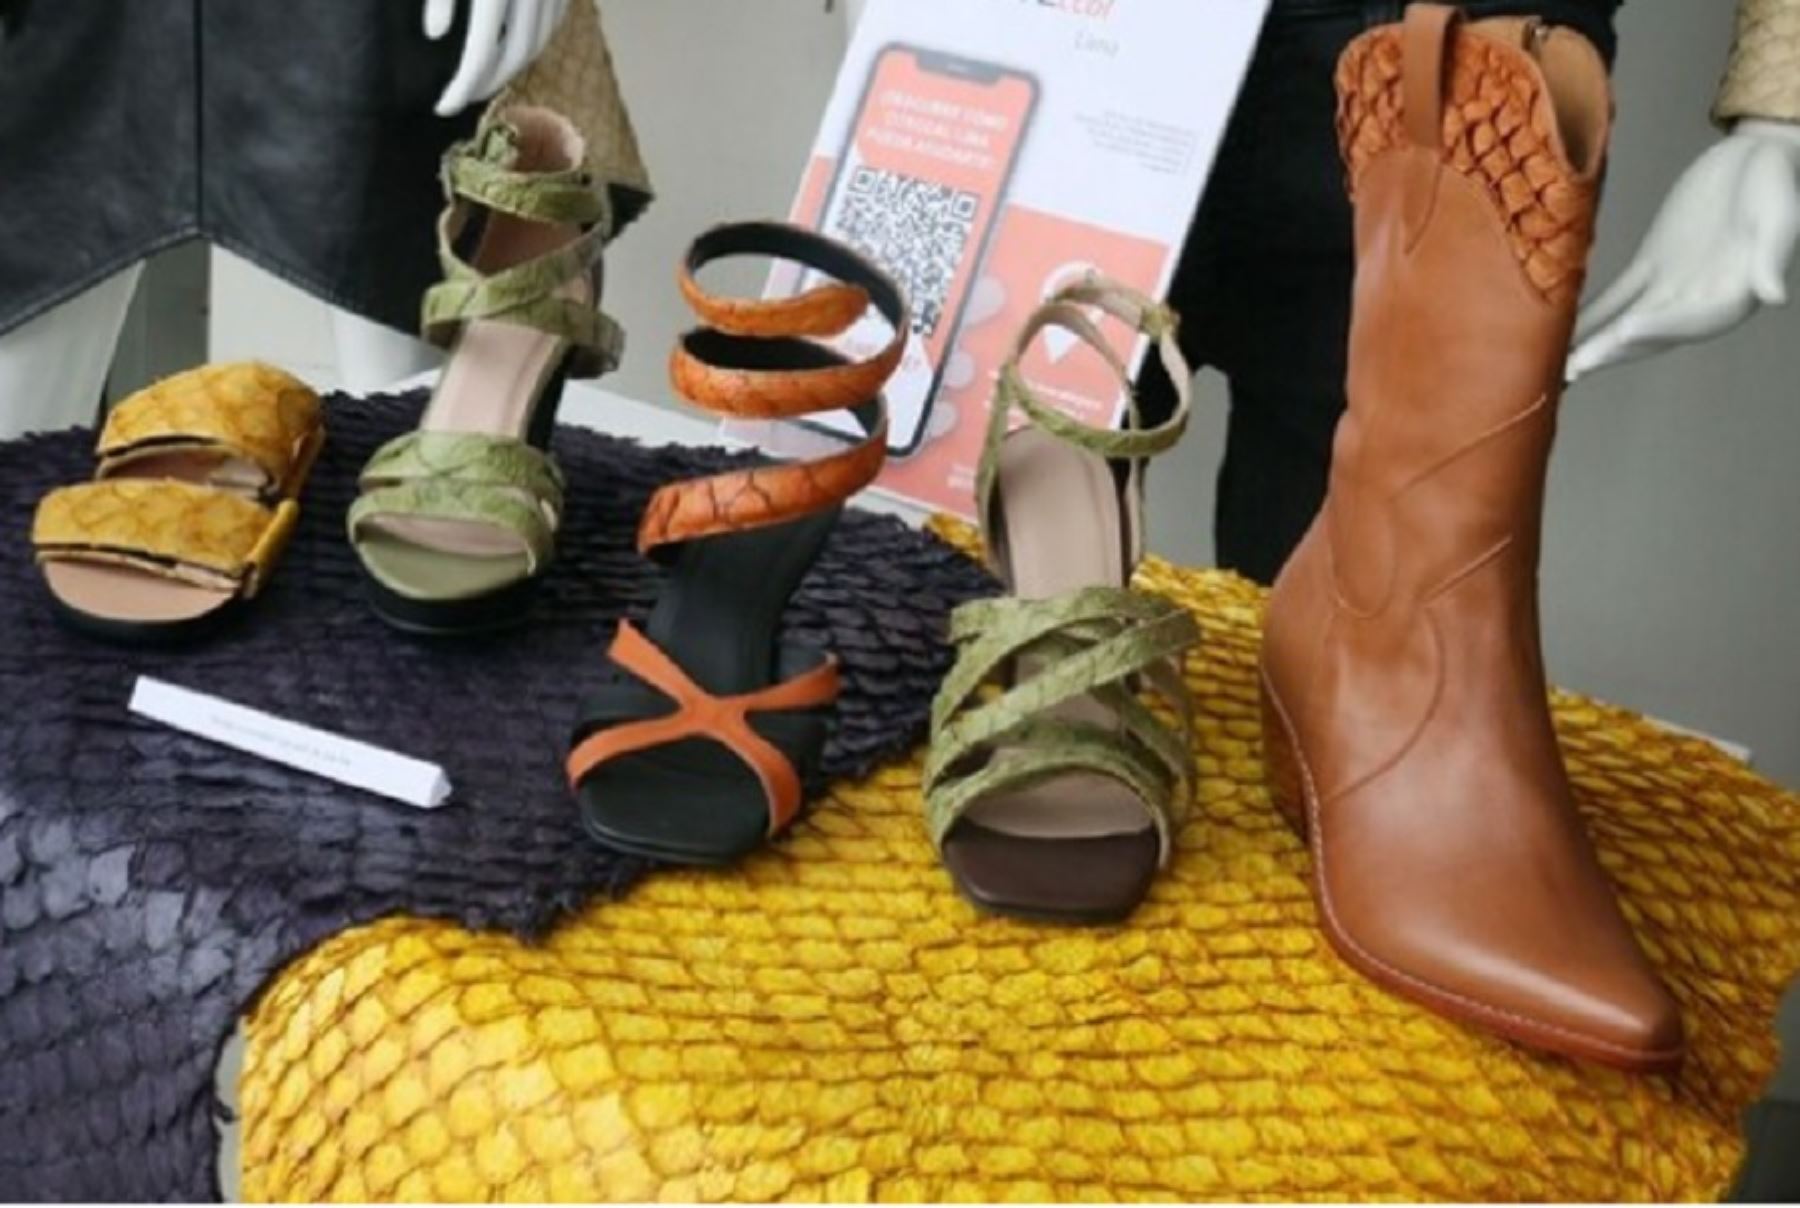 El Instituto Tecnológico de la Producción del Ministerio de la Producción, presentó “Moda Sostenible”, prendas y accesorios elaborados con piel de paiche como calzado, 
pantalón, chaleco, cartera, entre otros.